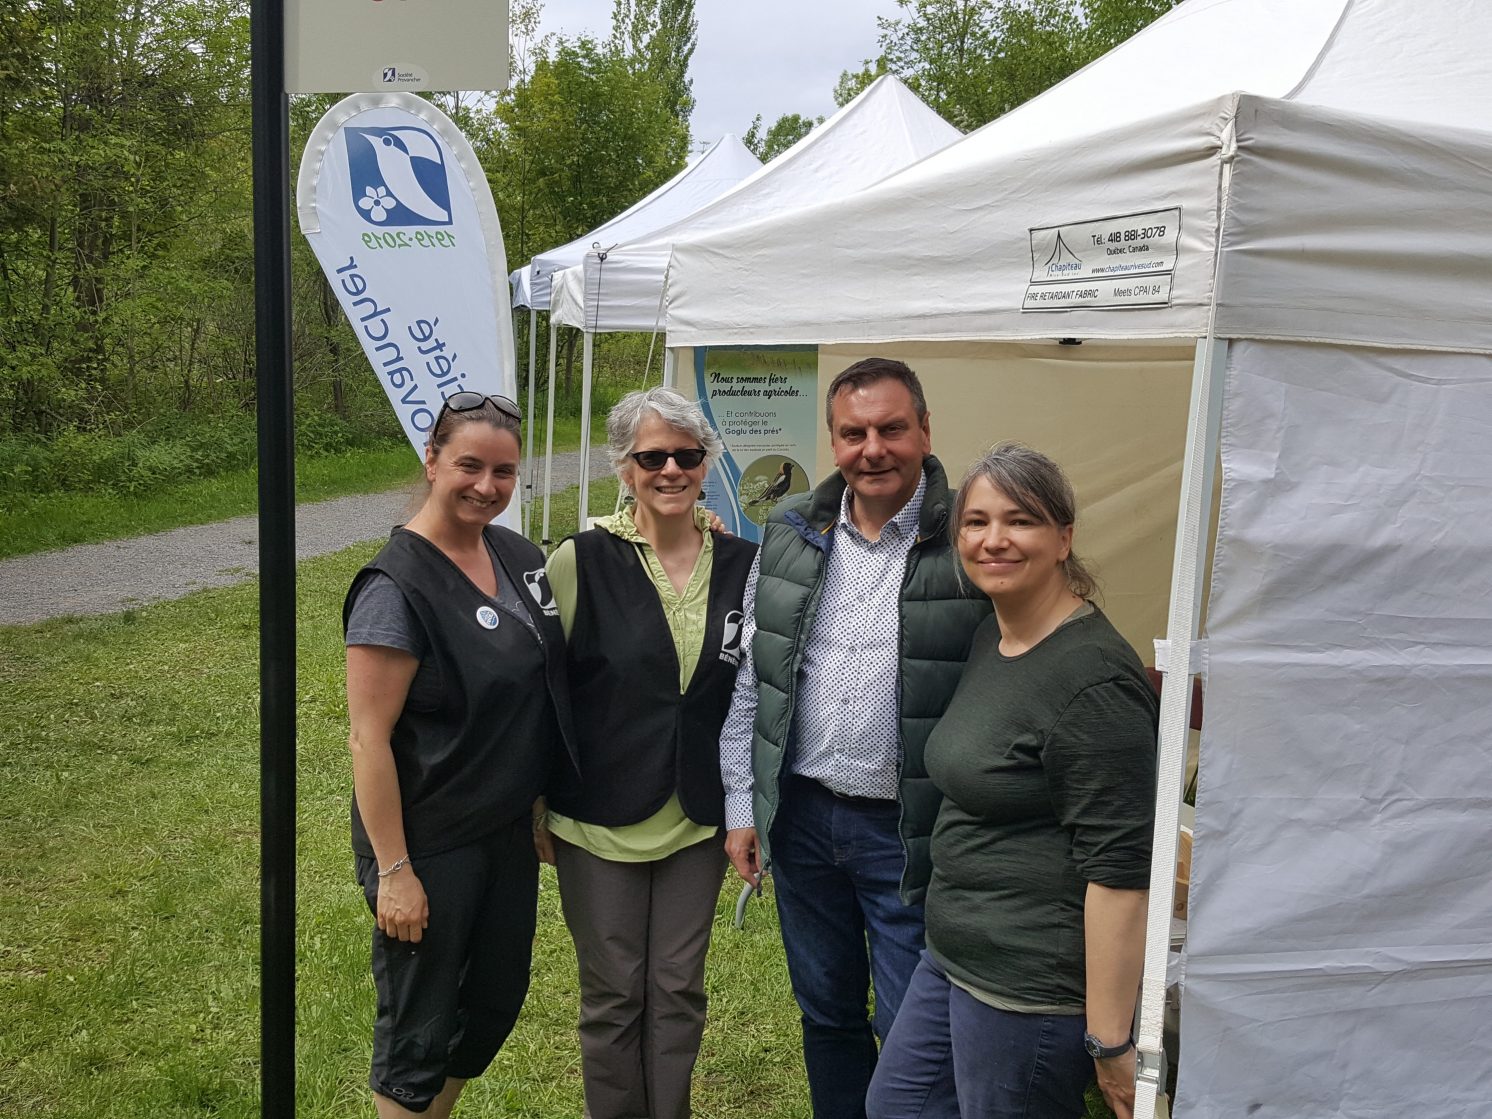 Visite du député de Portneuf, M. Vincent Caron, lors de la Fête des voisins "Charmants voisins", le 8 juin 2019 à la Réserve naturelle du Marais-Léon-Provancher.